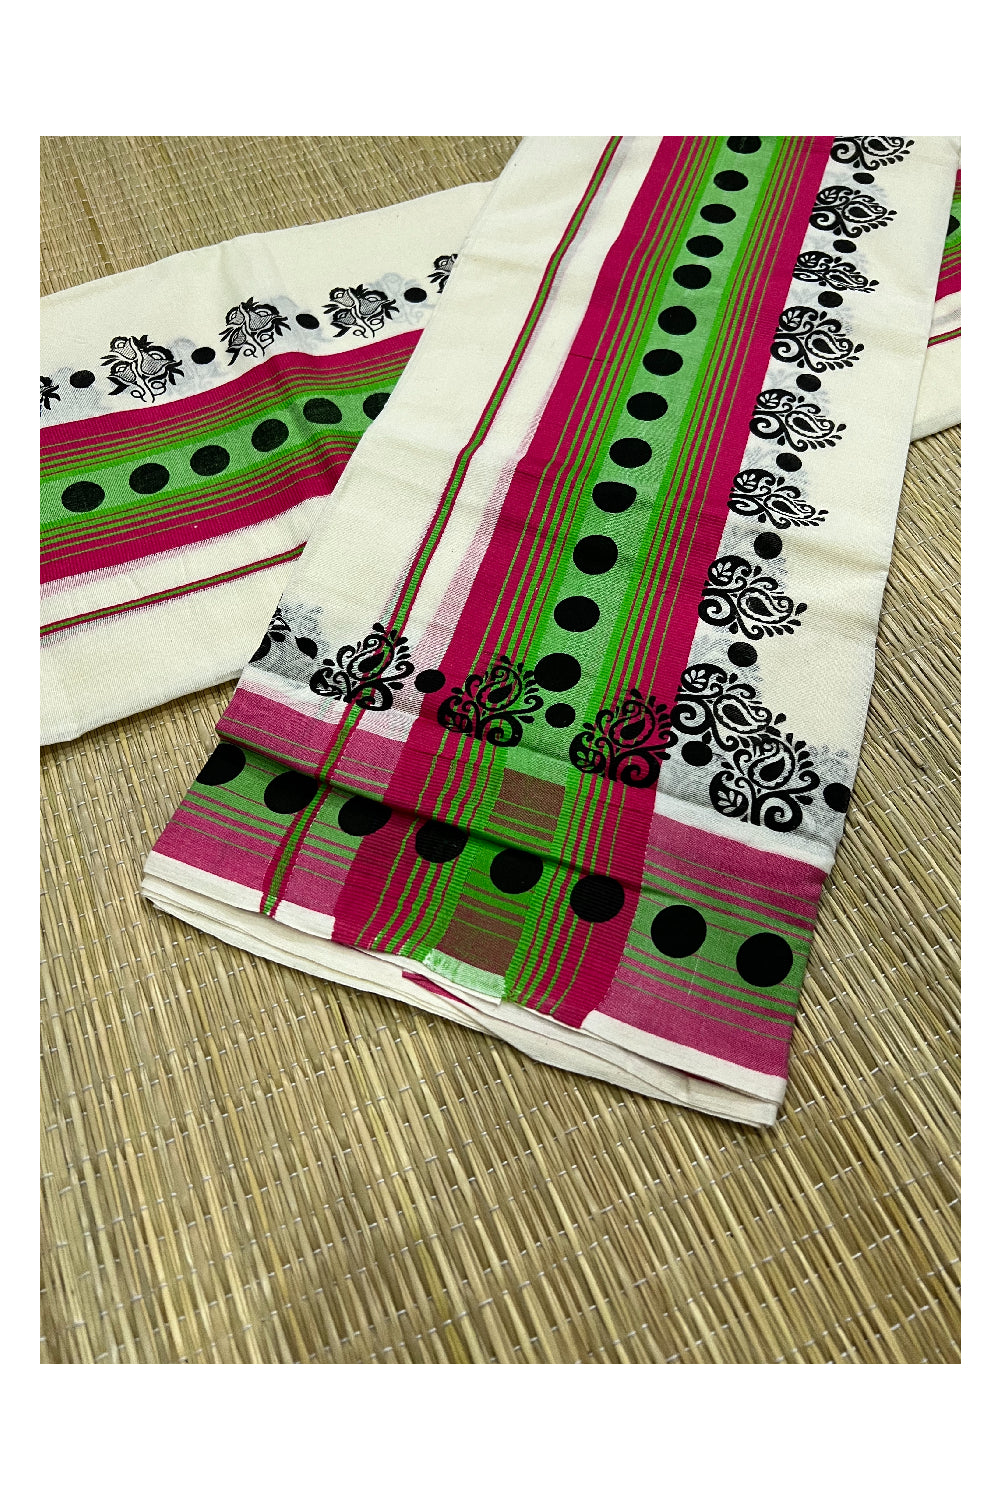 Kerala Cotton Set Mundu (Mundum Neriyathum) with Black Floral Block Prints on Dark Pink Green Border